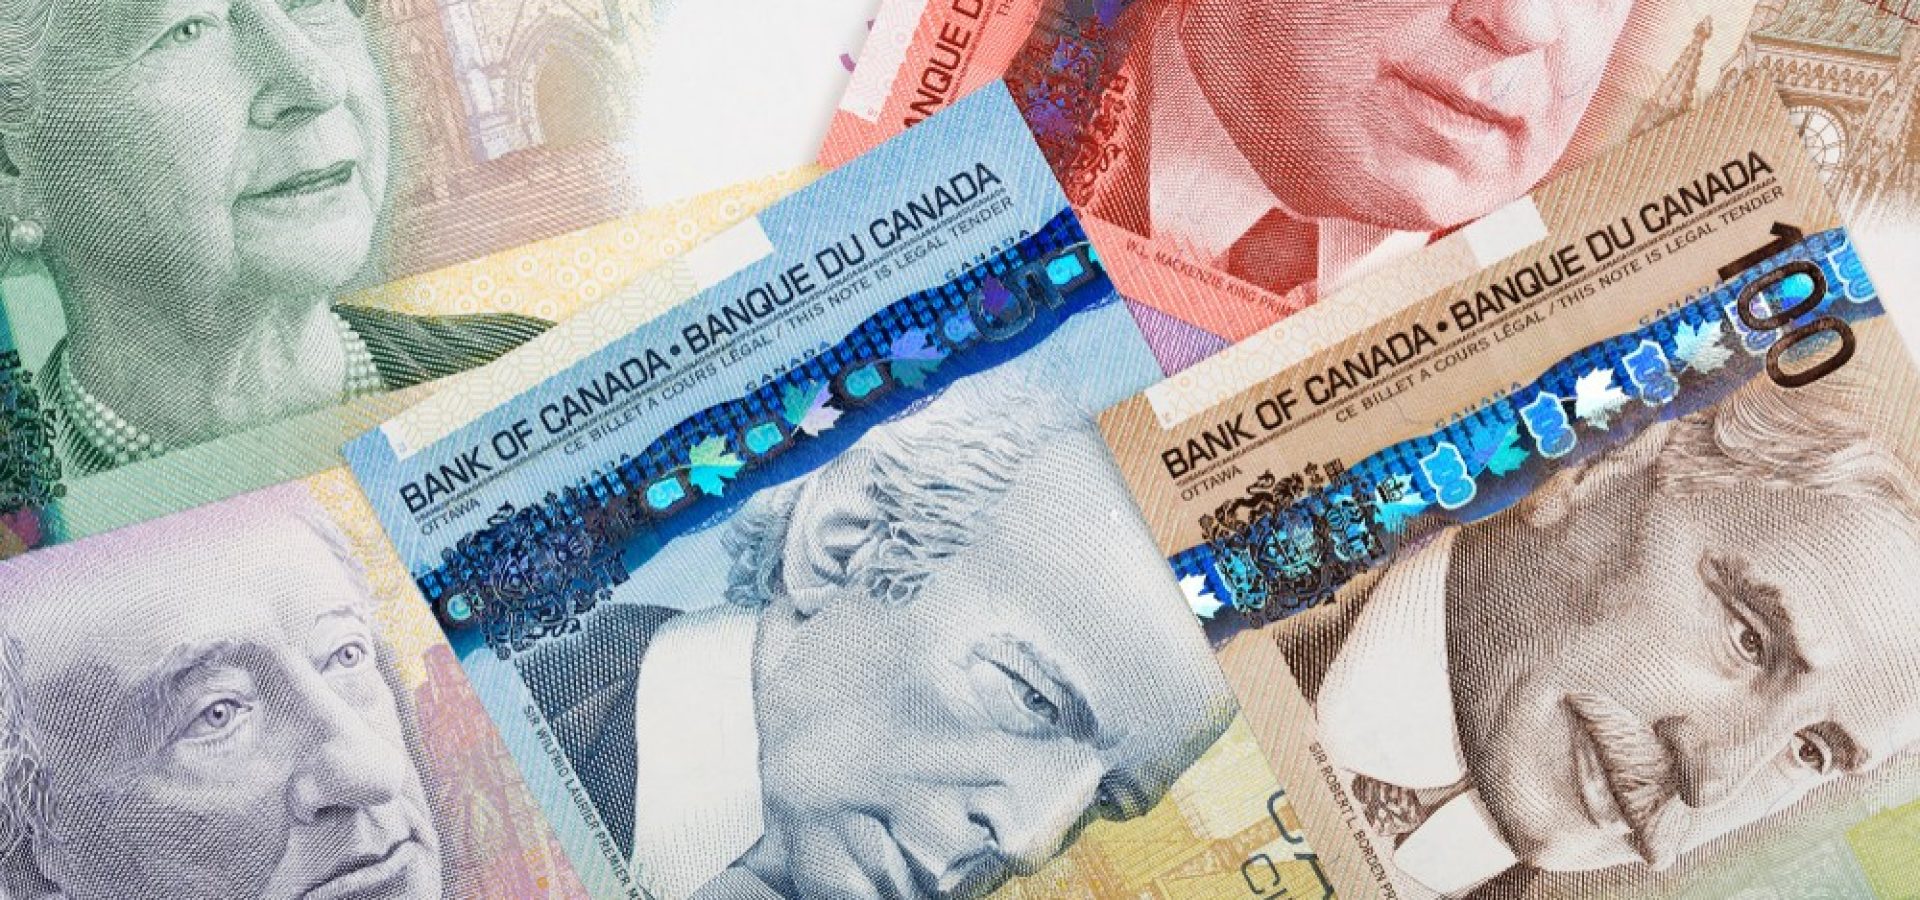 Wibest – Canadian Loonie: Canadian dollar bills.